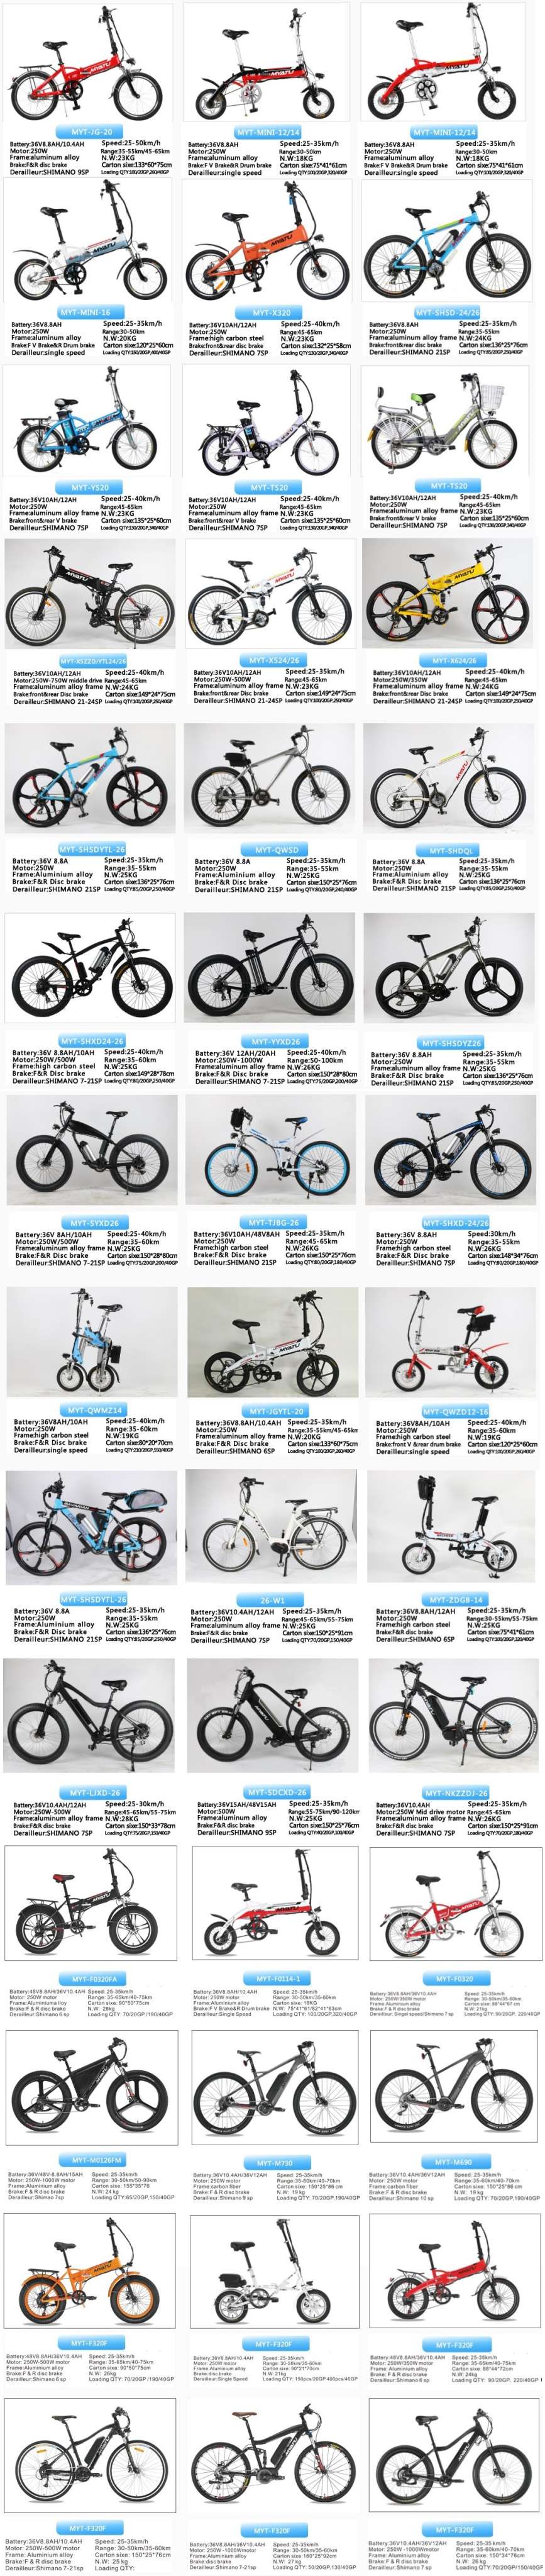 OEM Electirc Bikes Photo Gallery.JPG